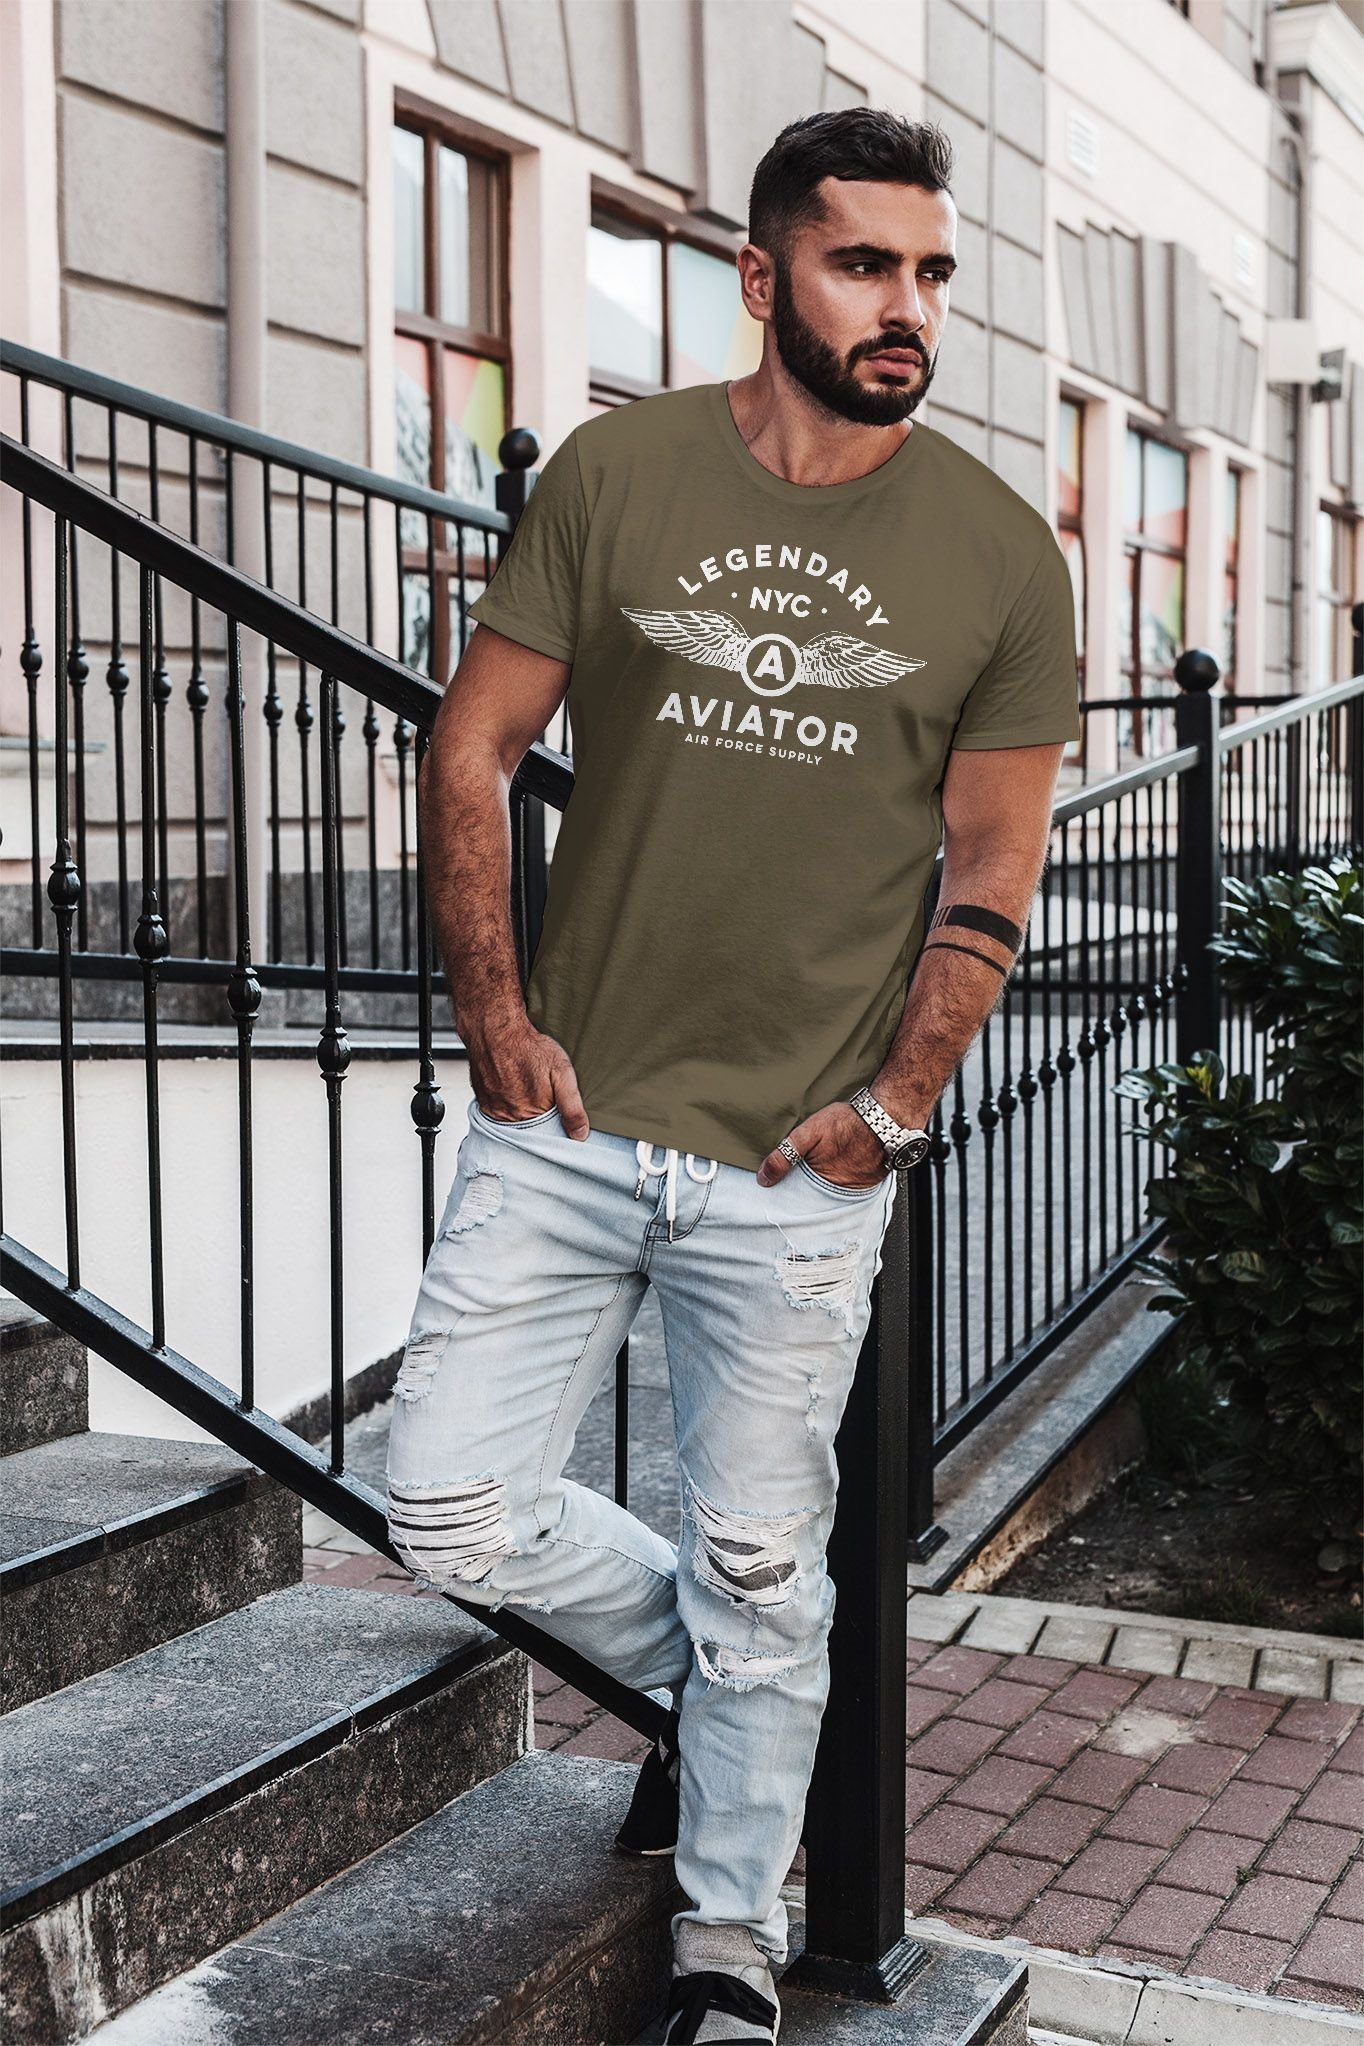 Streetstyle Print grün Force Legendary Fashion Flügel NYC Luftwaffe mit Neverless Air Neverless® Aviator T-Shirt Print-Shirt Herren